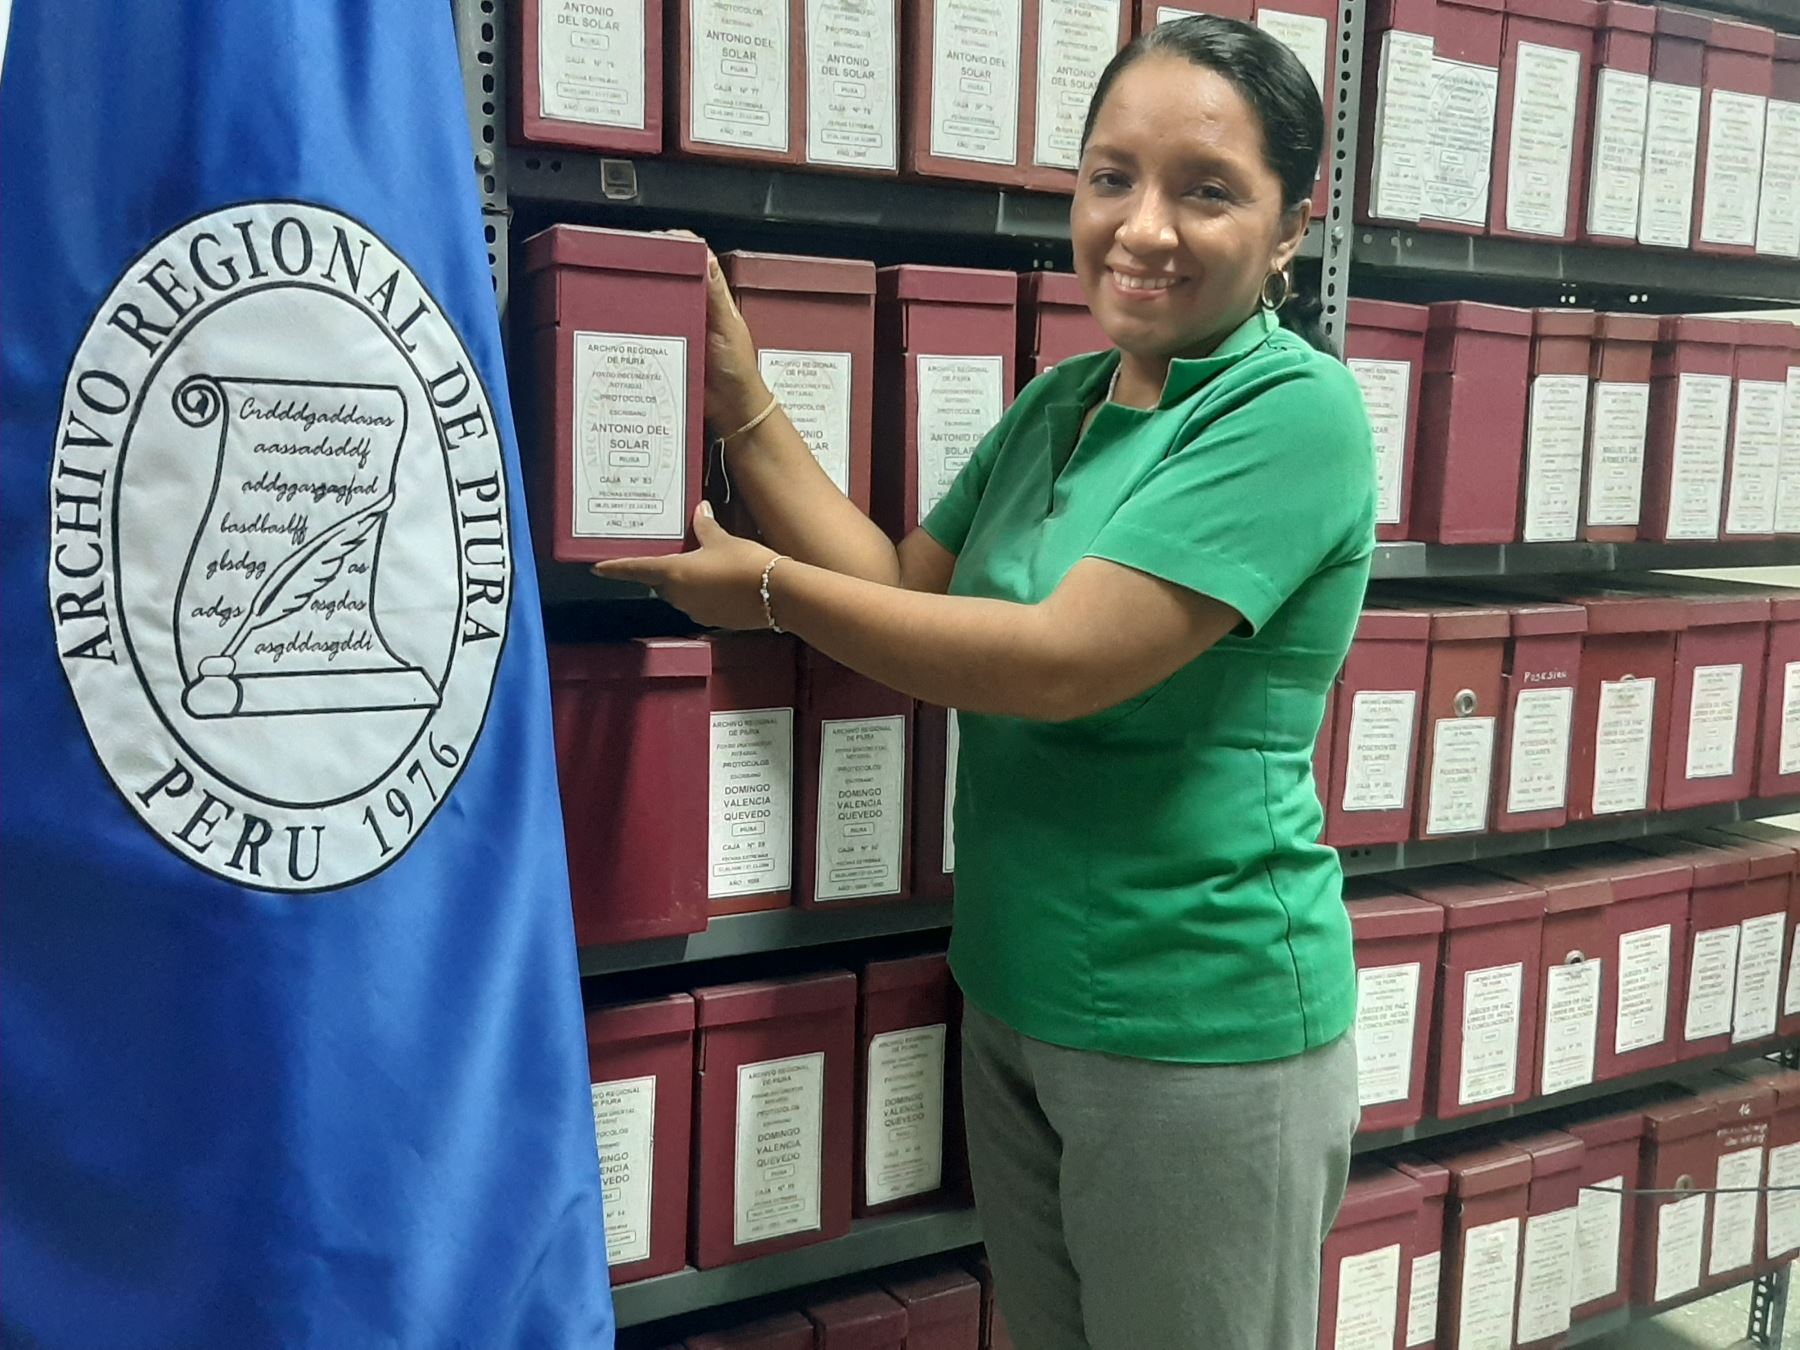 Lury Molero Ramos del Archivo Regional de Piura sostiene que Urge invertir en cuidar el patrimonio documentario. ANDINA/ Archivo Regional de Piura.